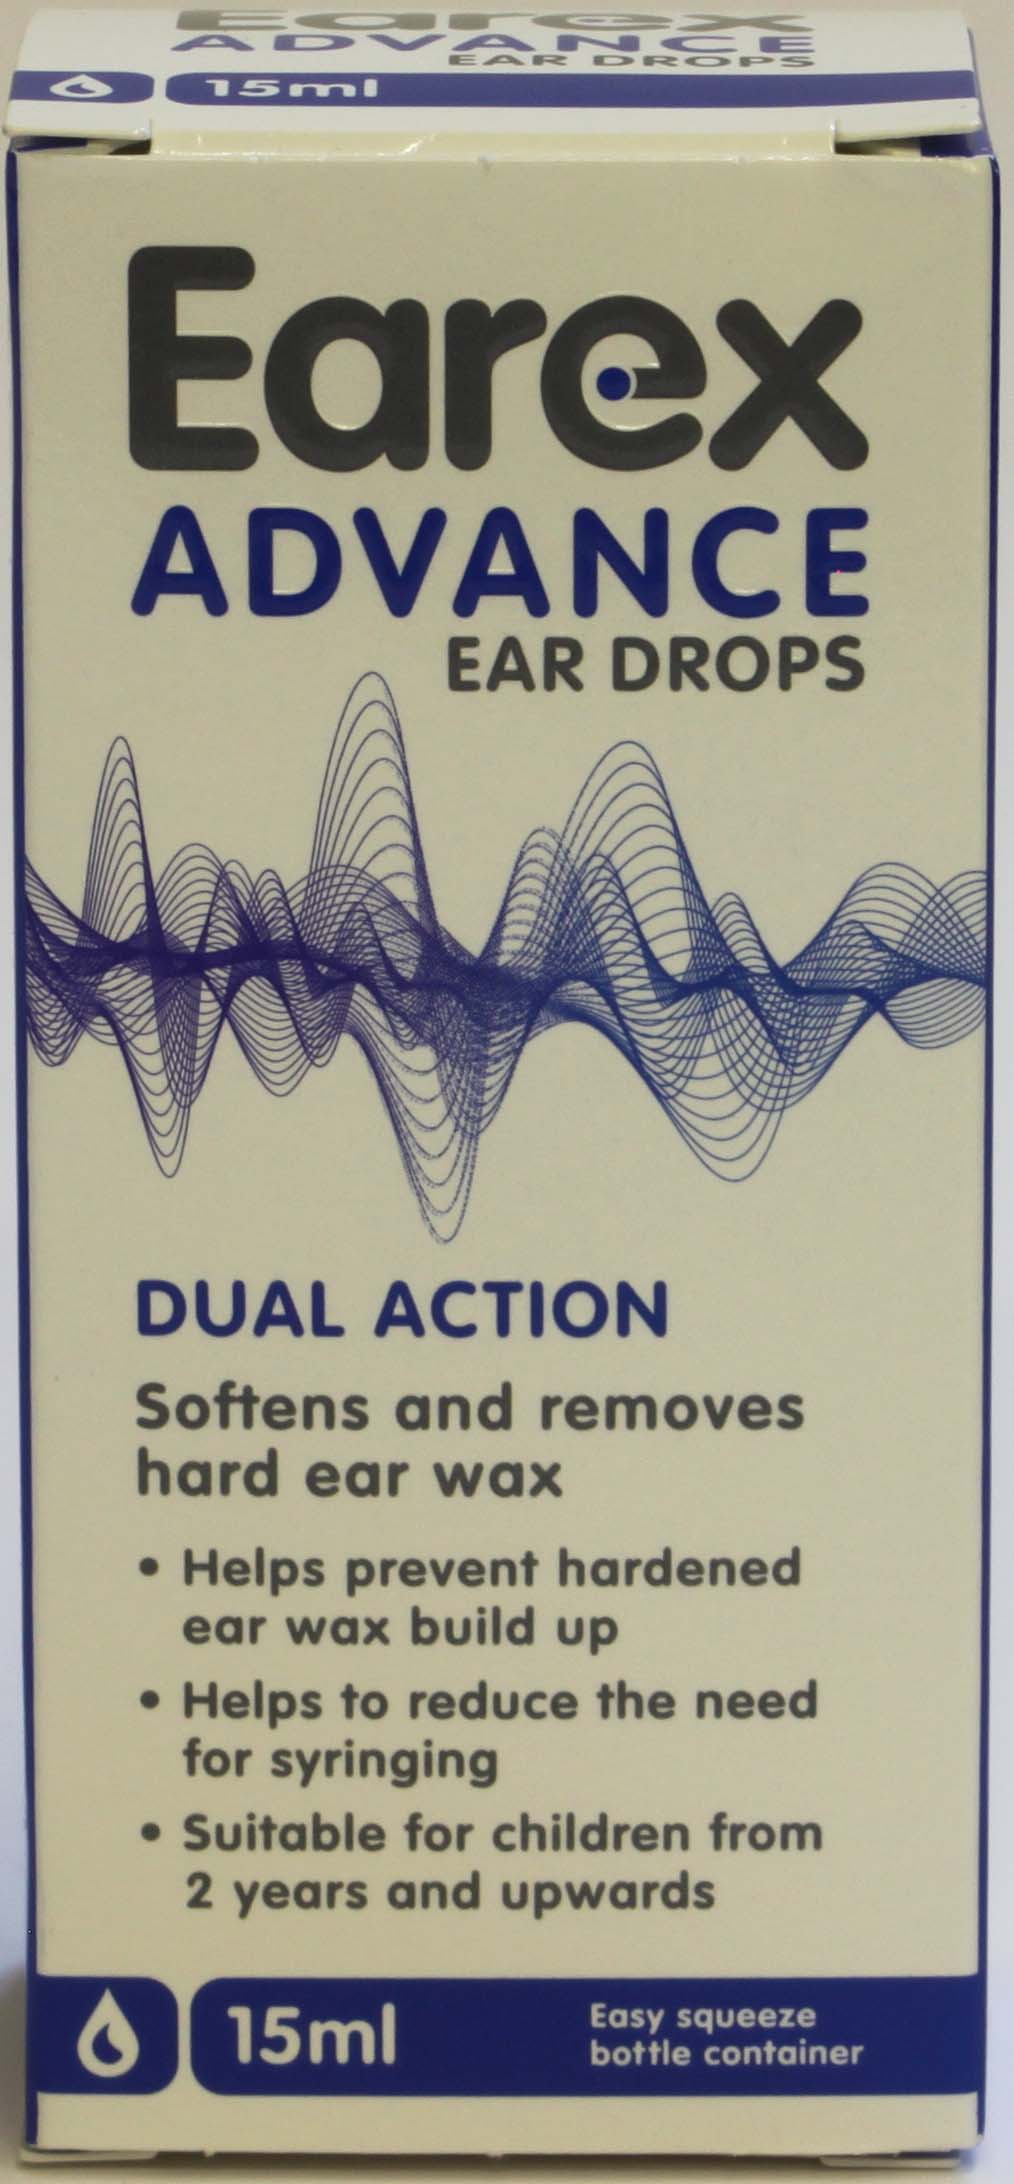 Earex Advance Ear Drops 15 ml